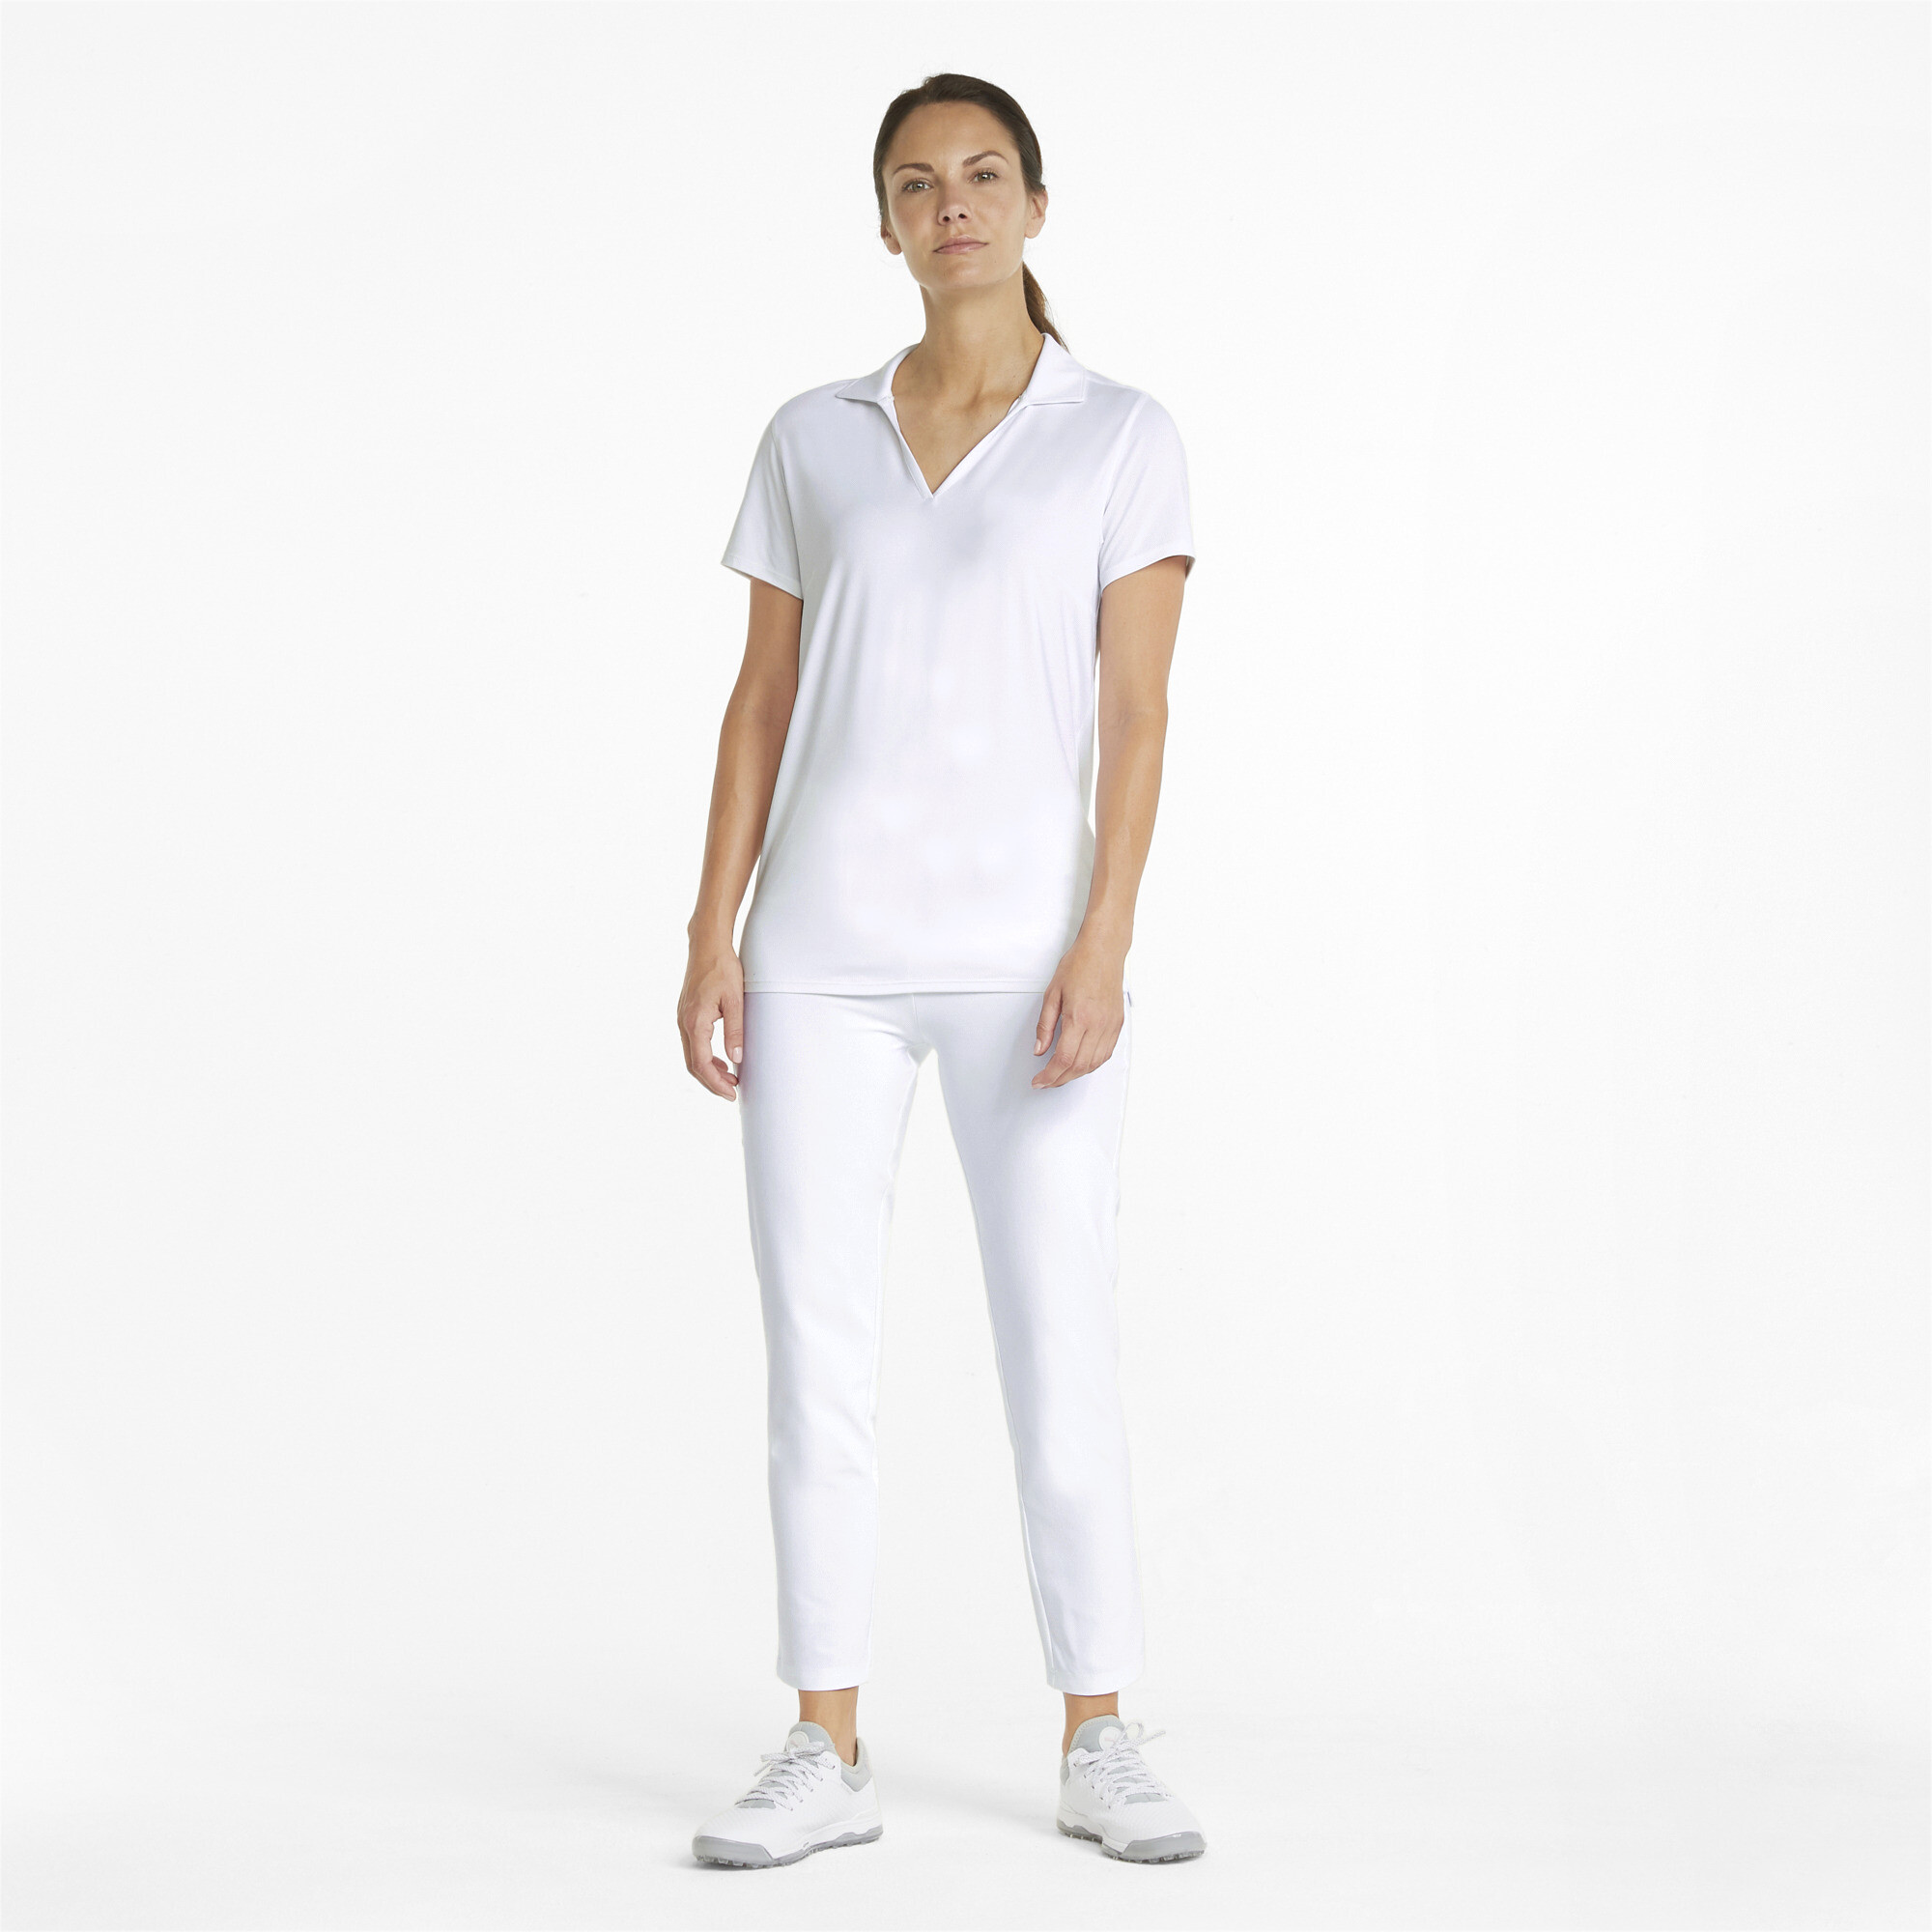 Women's Puma CLOUDSPUN Coast's Golf Polo T-Shirt, White T-Shirt, Size XL T-Shirt, Clothing